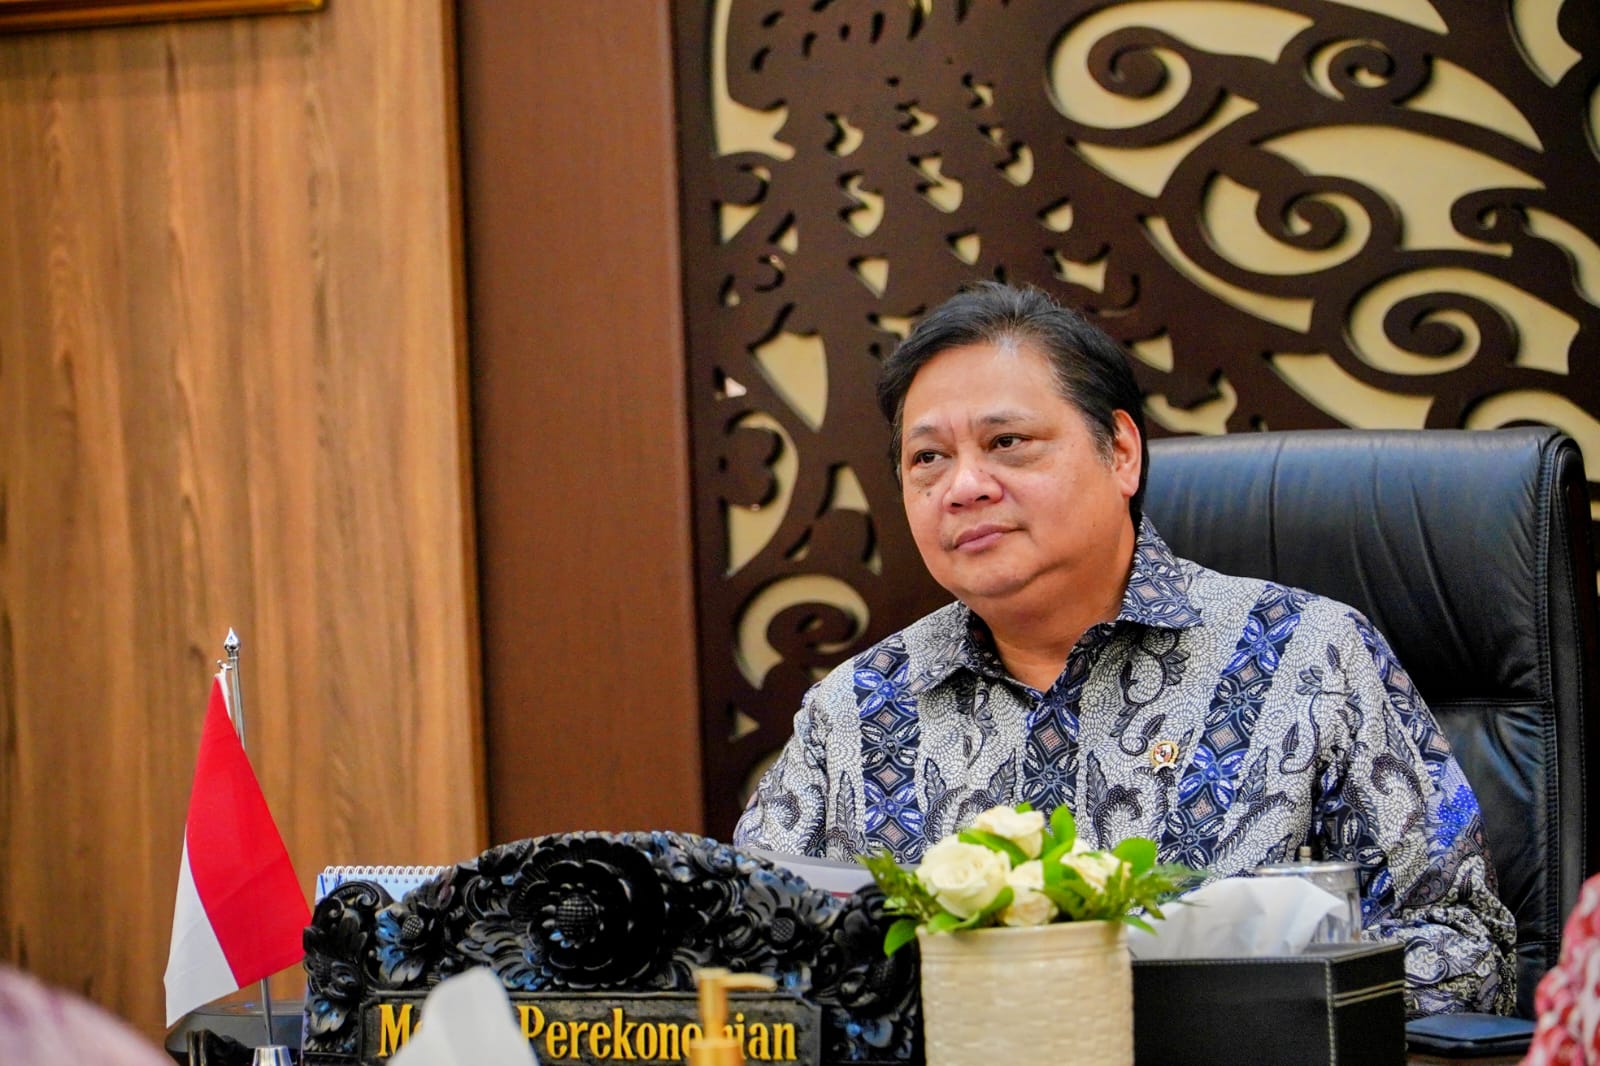 Airlangga Hartarto mengakui, meski kondisi perekonomian tertekan, perlahan tapi pasti kondisi perekonomian Indonesia bangkit kembali.